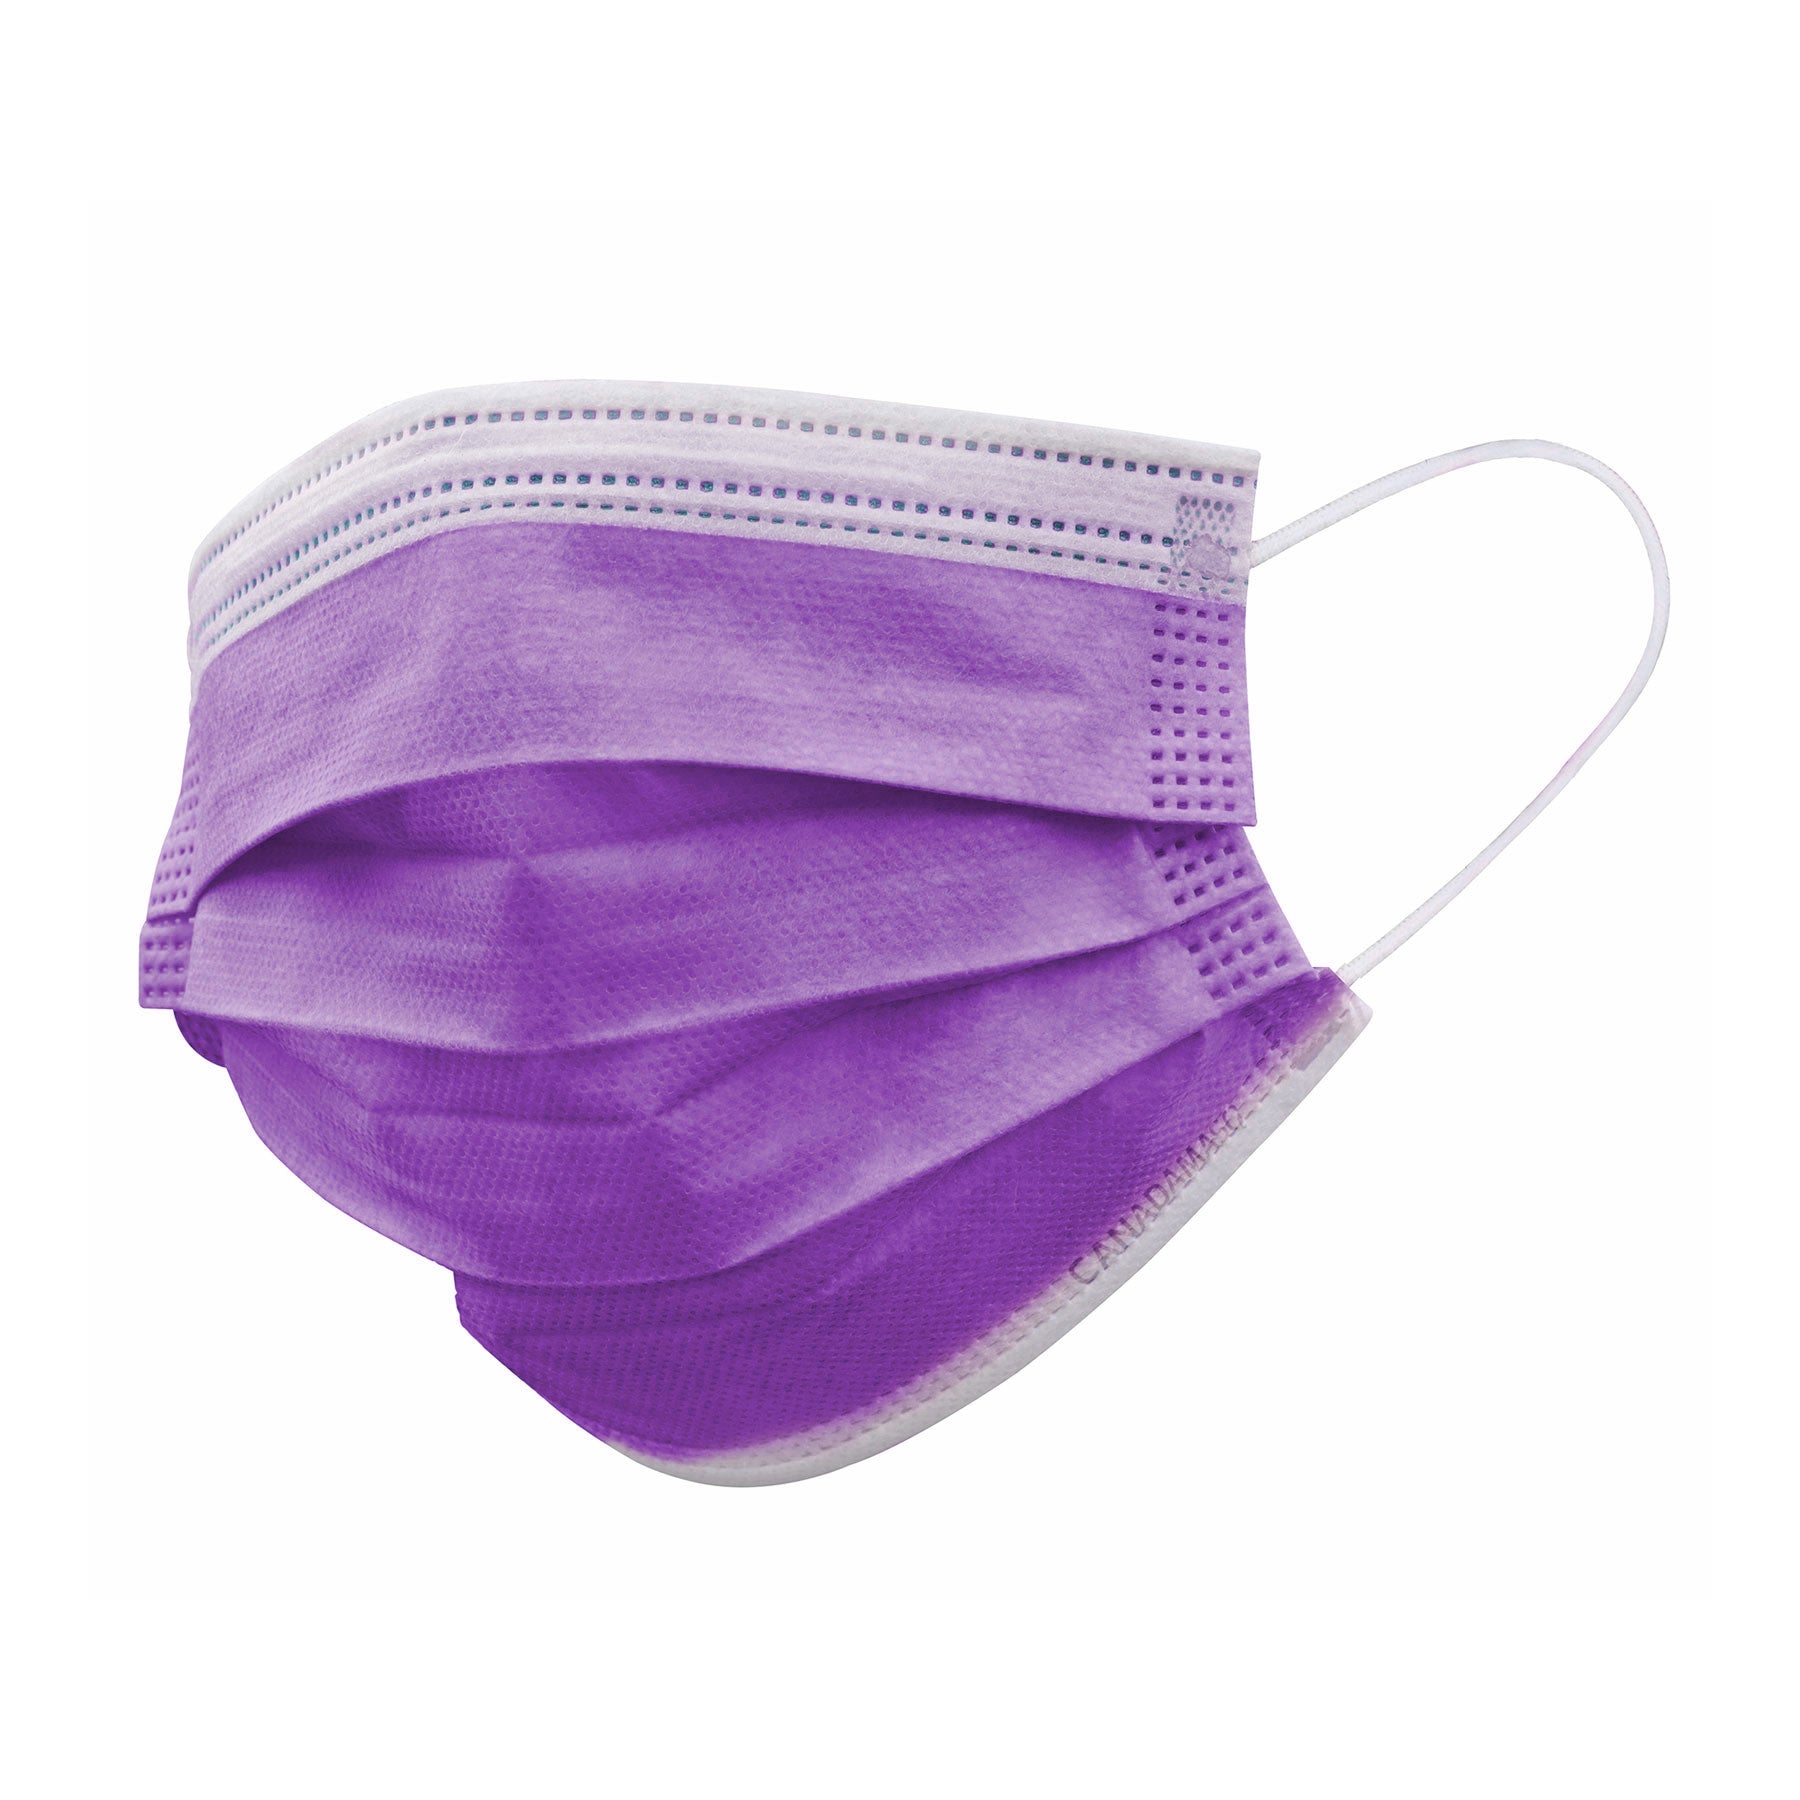 Canada Masq Purple anti fog face mask level 3 ASTM Made in Canada